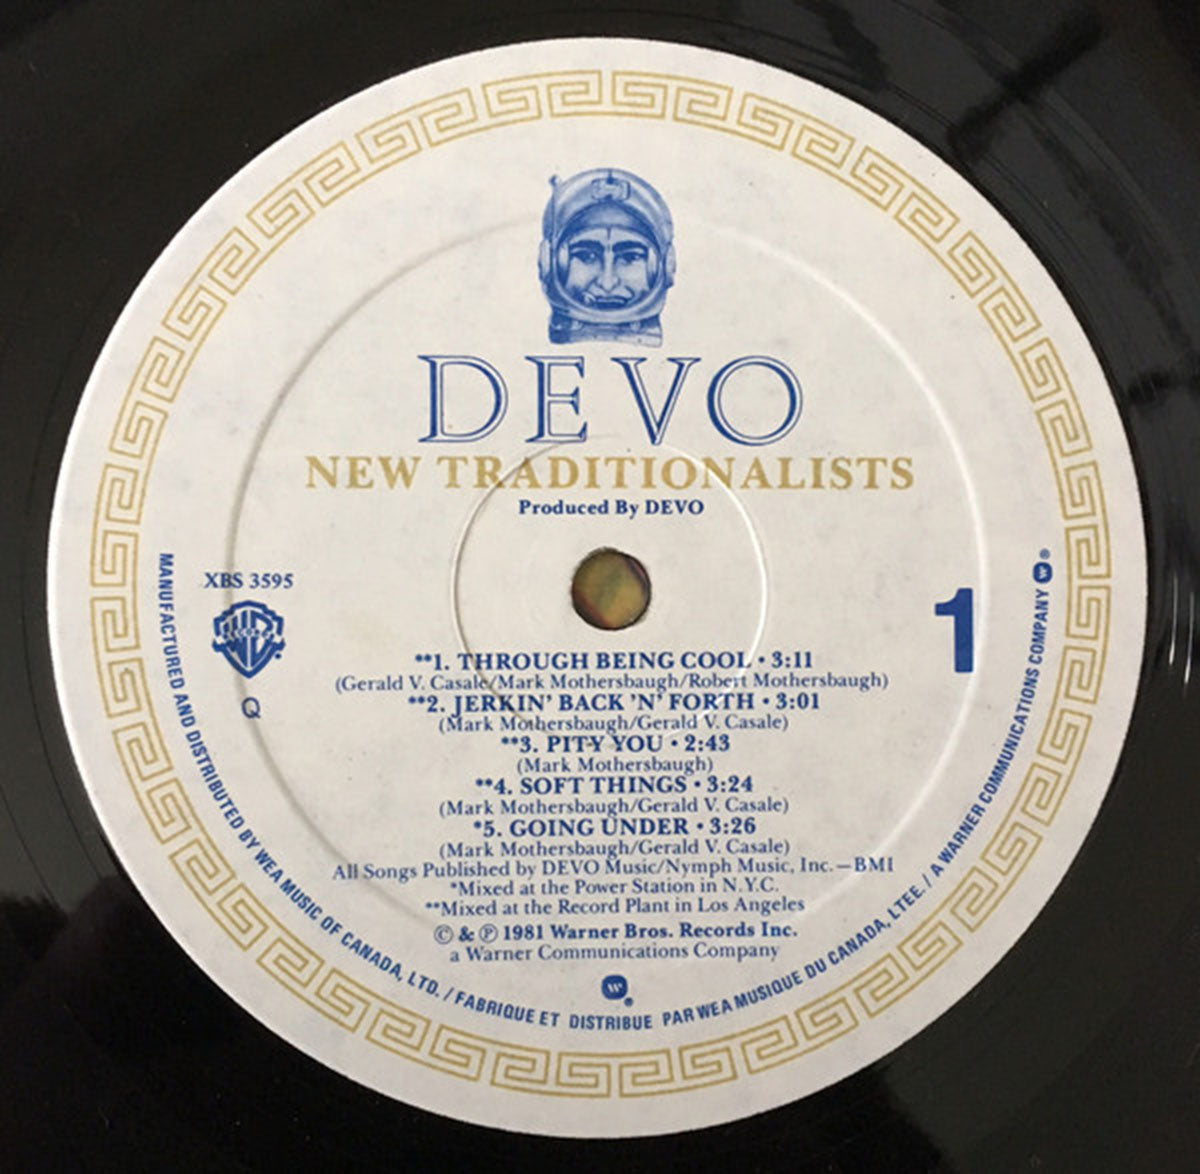 Devo – New Traditionalists - 1981